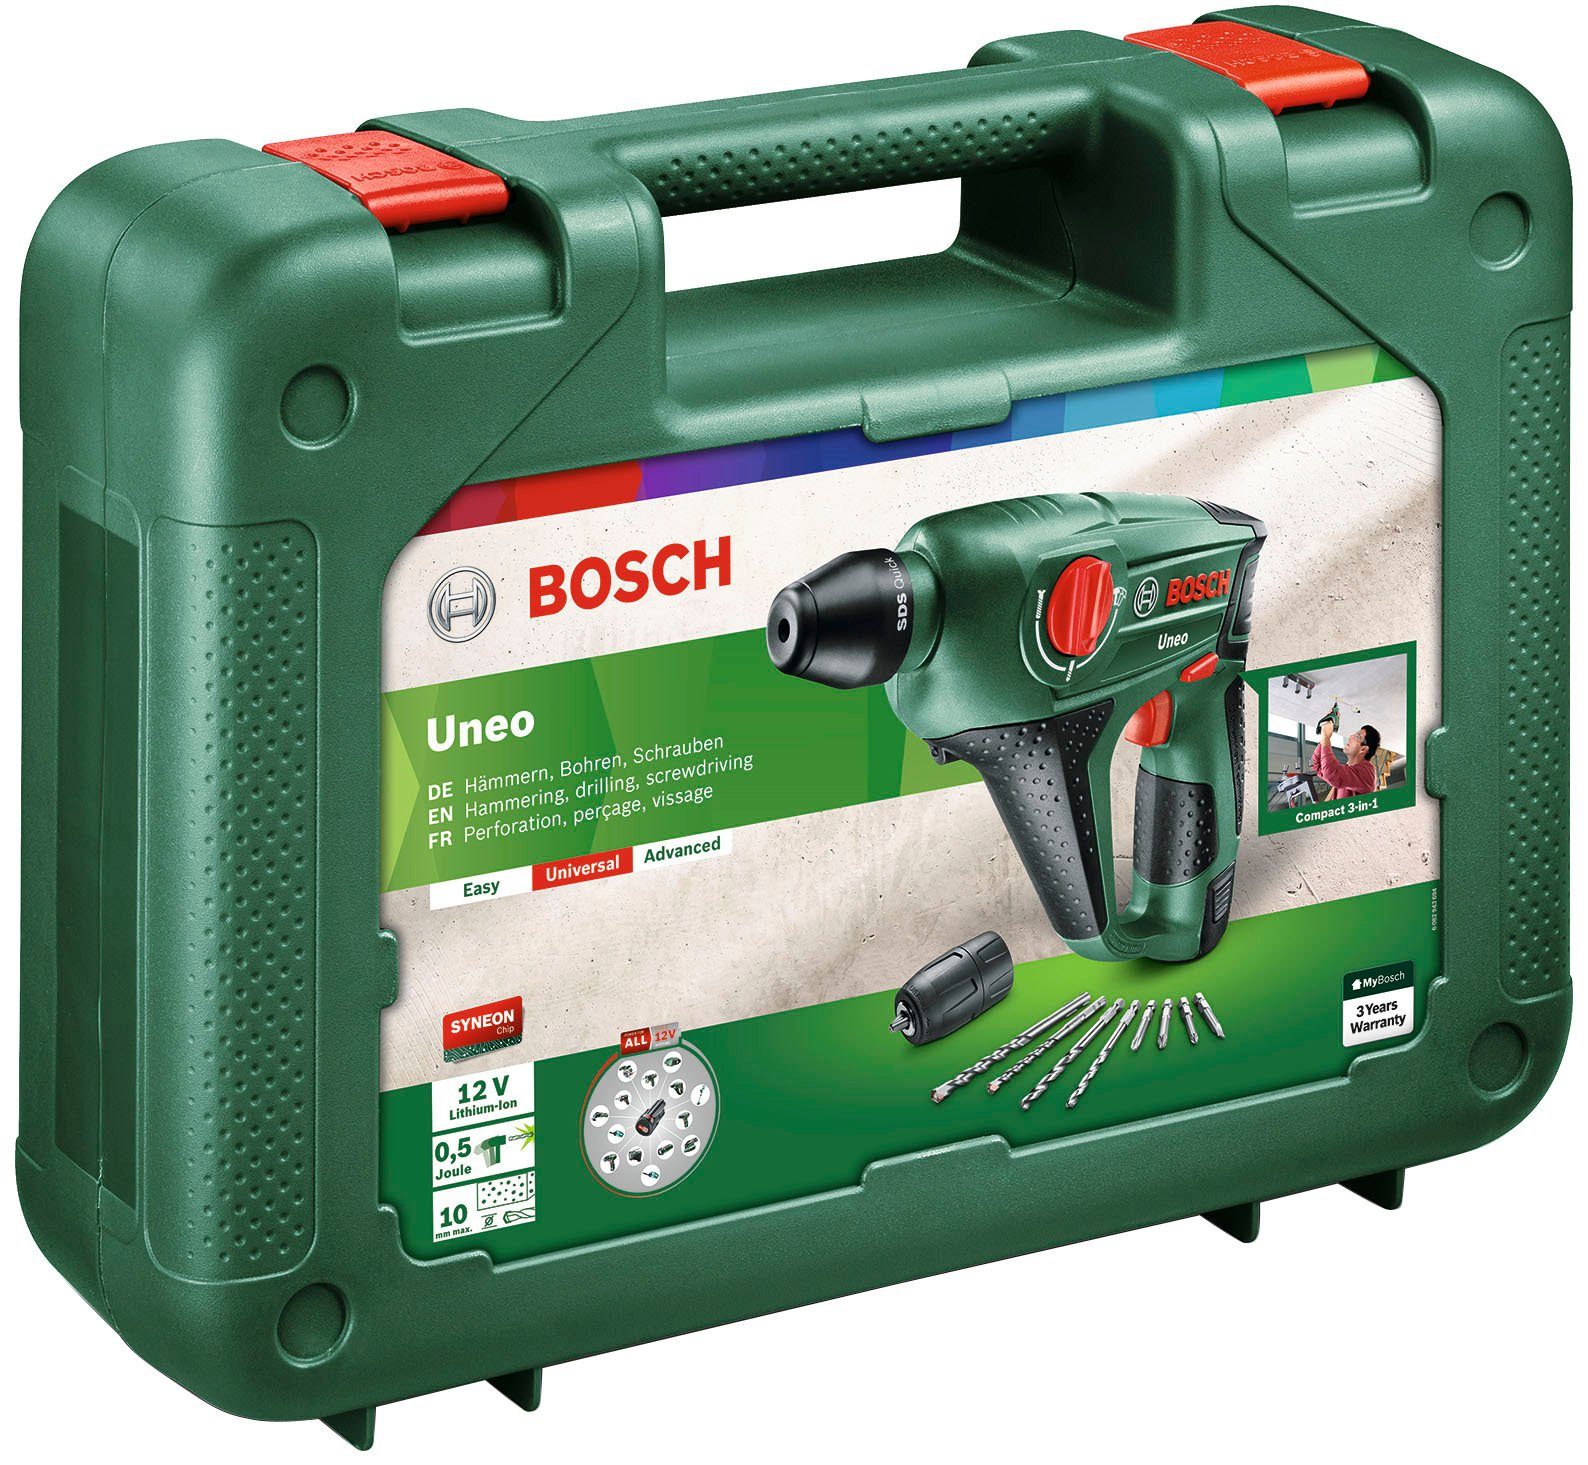 Bosch Home & Garden Bohrhammer 900 (Set), Akku U/min, und Ladegerät inkl. Uneo, max